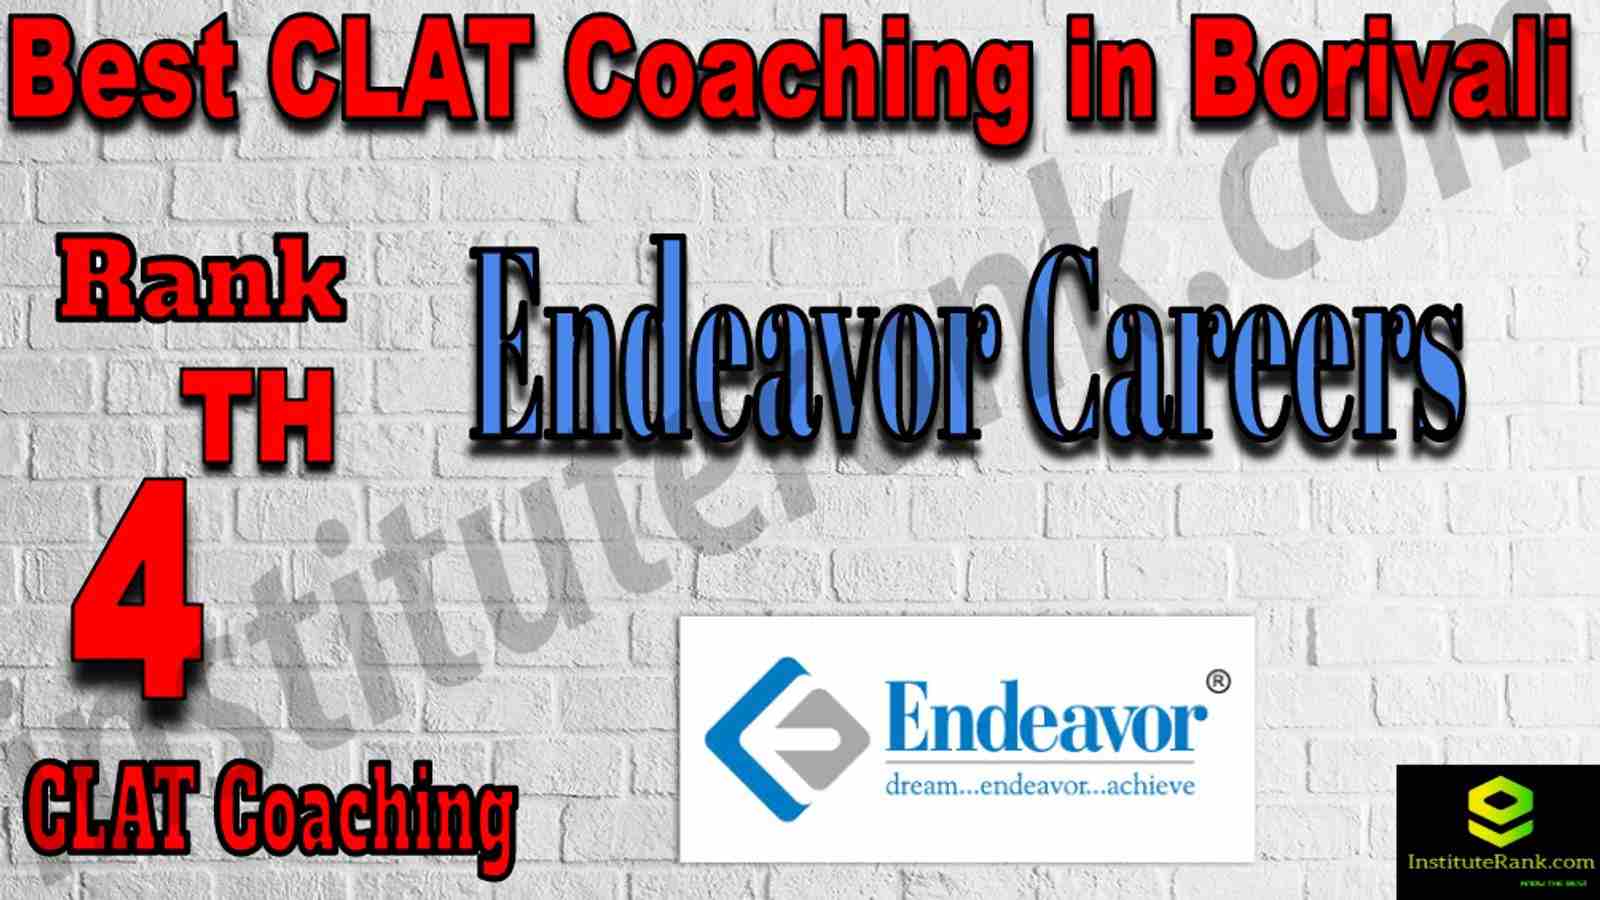 4th Best CLAT Coaching in Borivali